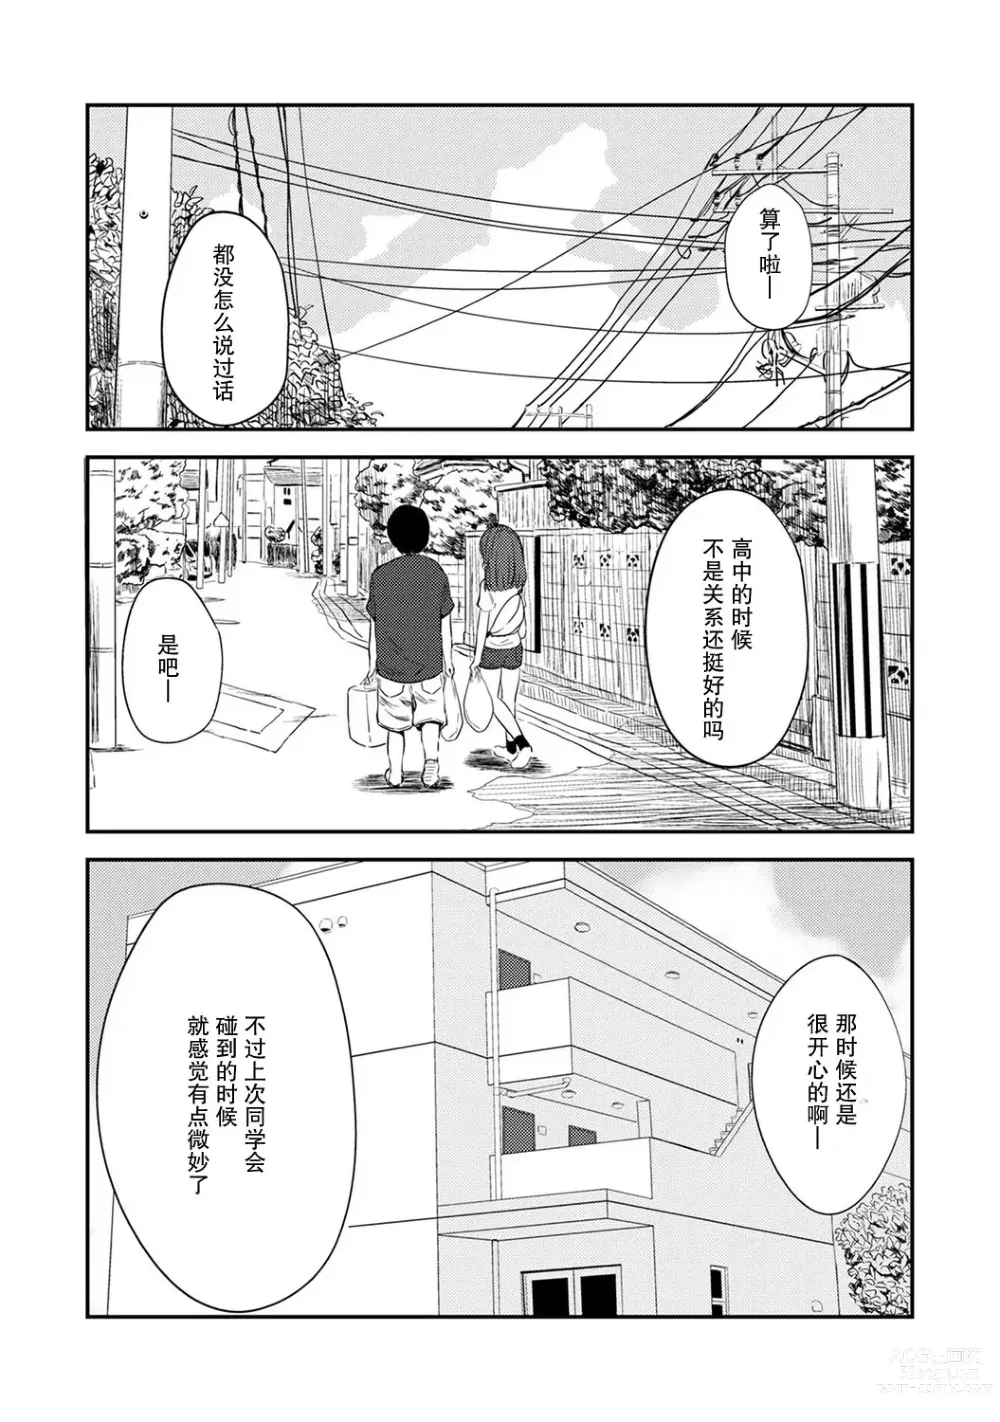 Page 6 of manga 交往5年后我们的性福生活 第1集